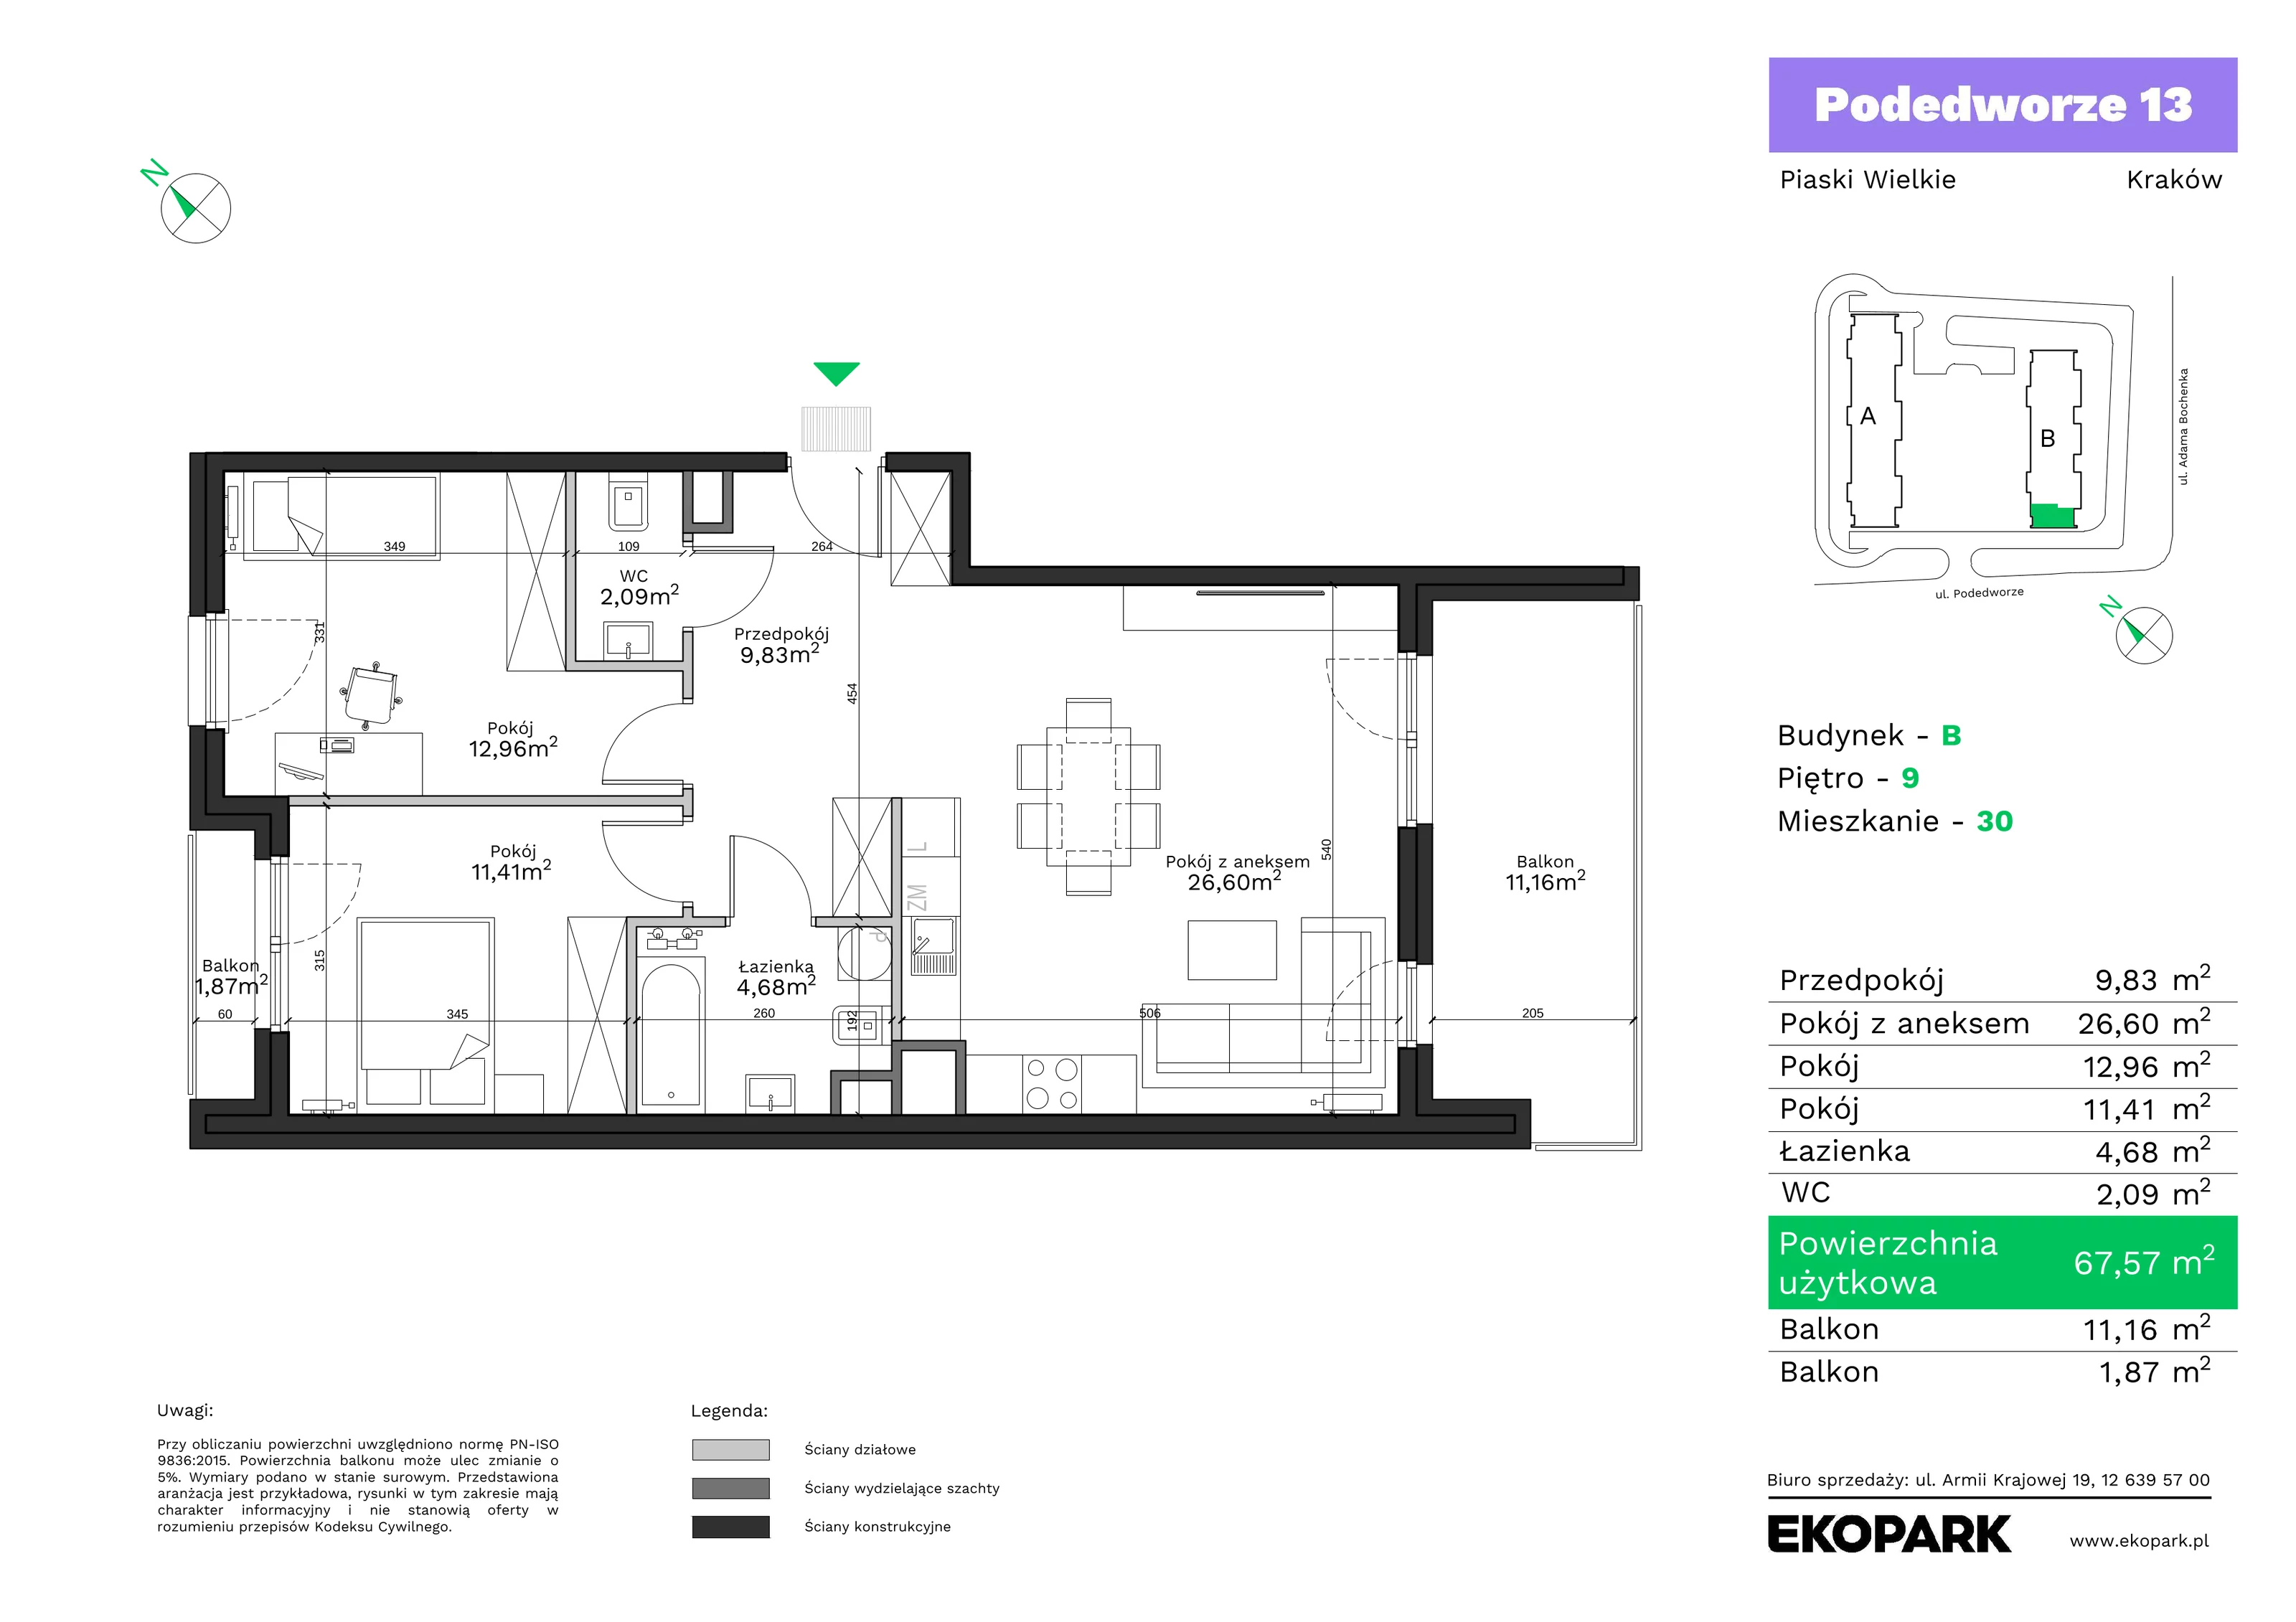 Mieszkanie 67,57 m², piętro 9, oferta nr B30, Podedworze 13, Kraków, Podgórze Duchackie, Piaski Wielkie, ul. Podedworze 13